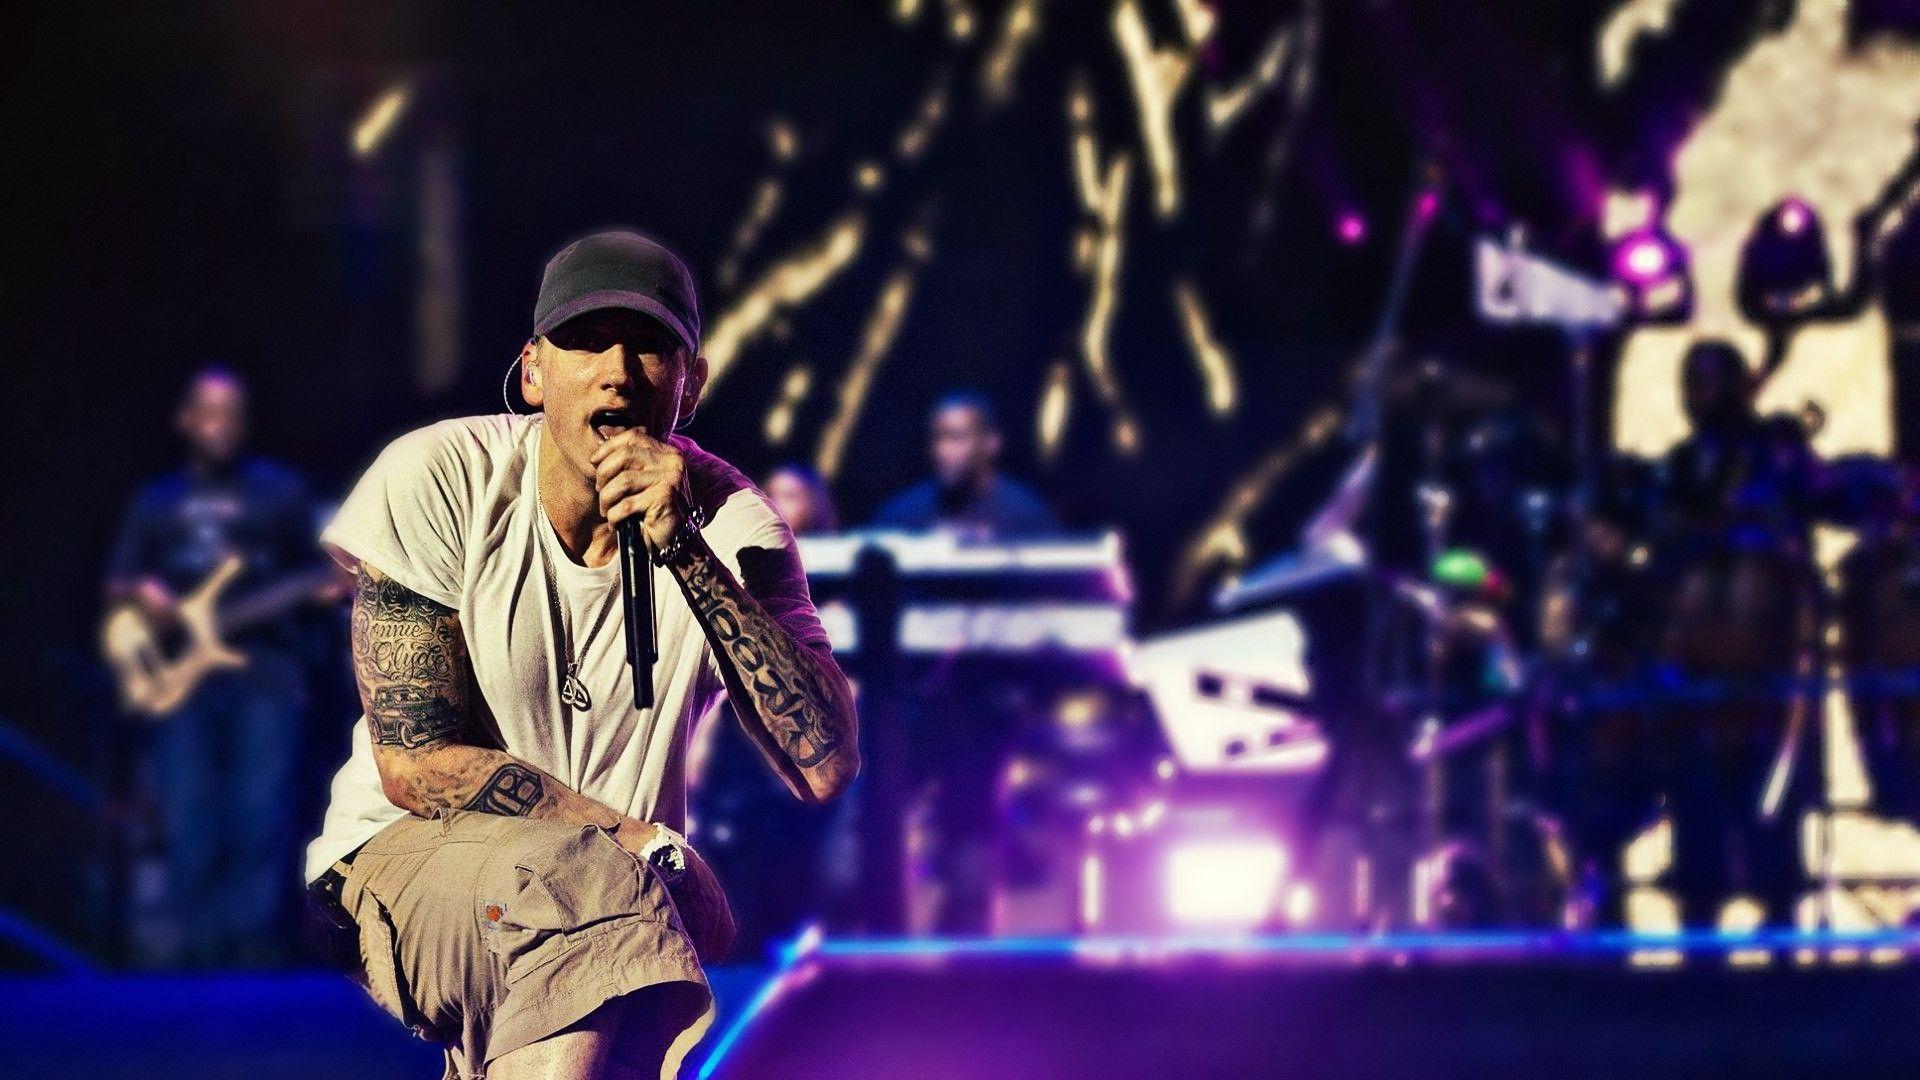 Eminem On Stage 1440P Resolution HD 4k Wallpaper, Image